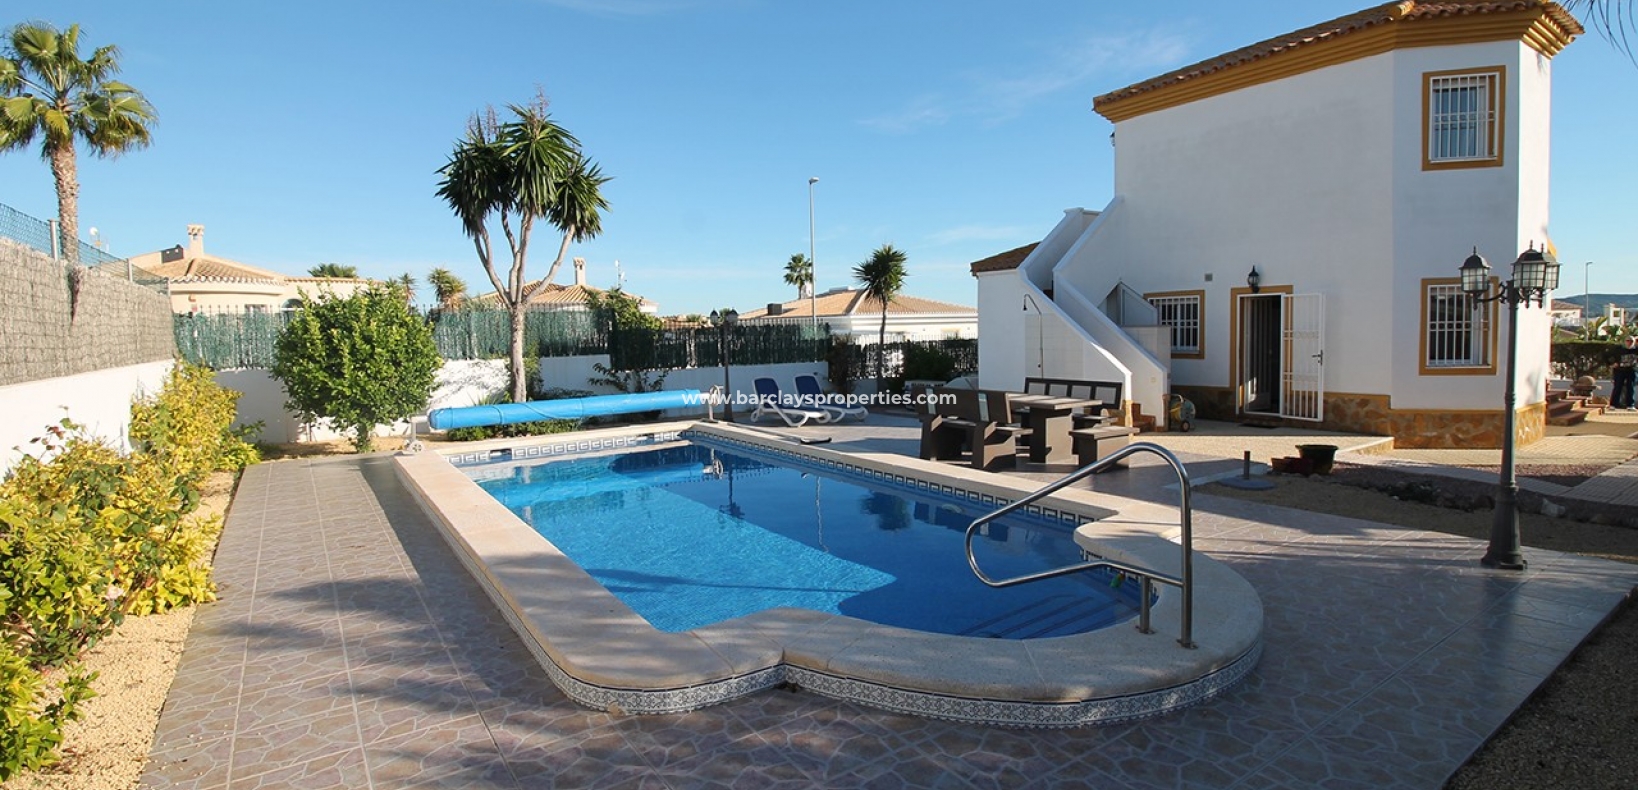 Huvudsikt - Fristående villa till salu i Urb. La Marina, med pool